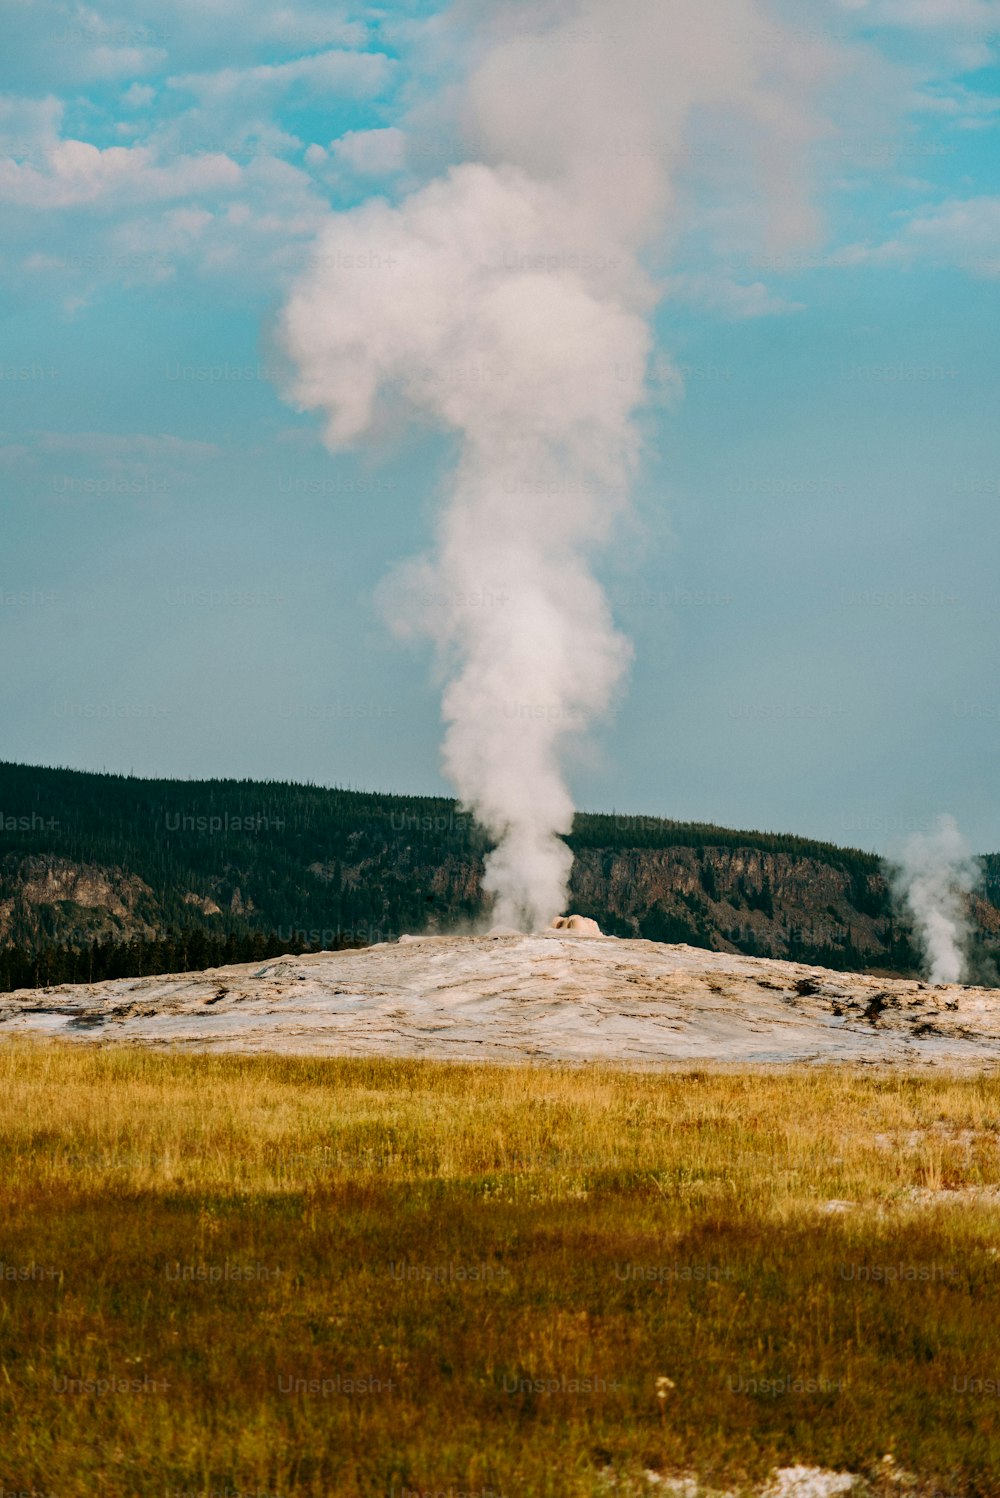 Un geyser emette vapore mentre sale nel cielo